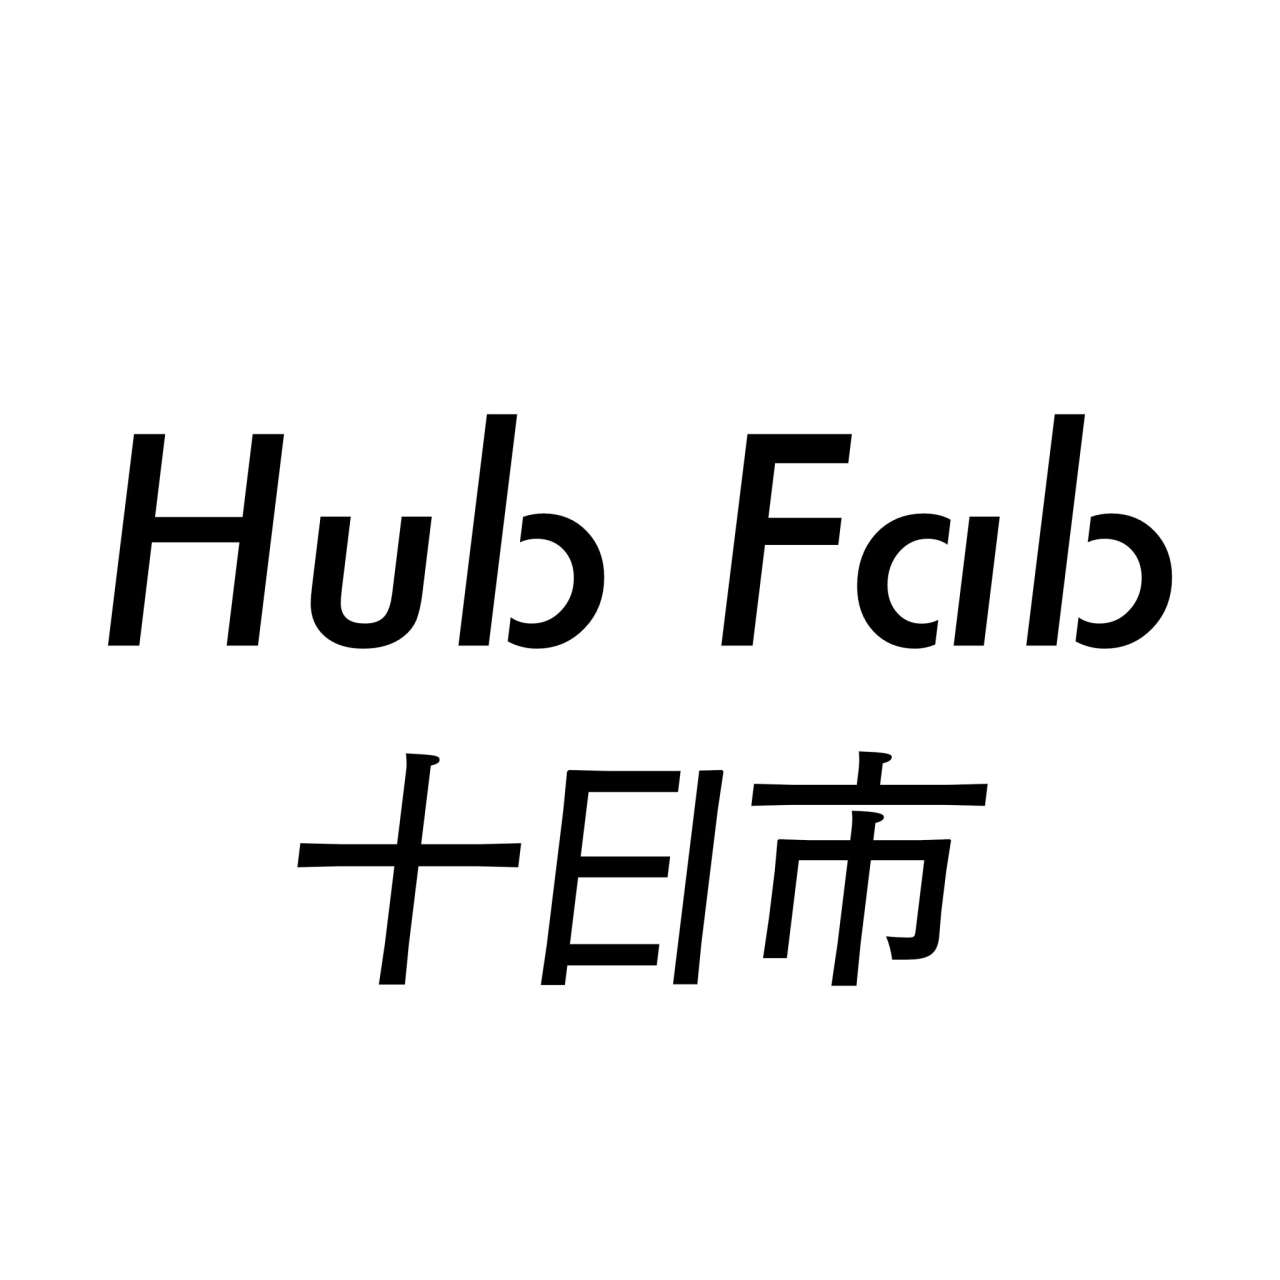 hub fab2